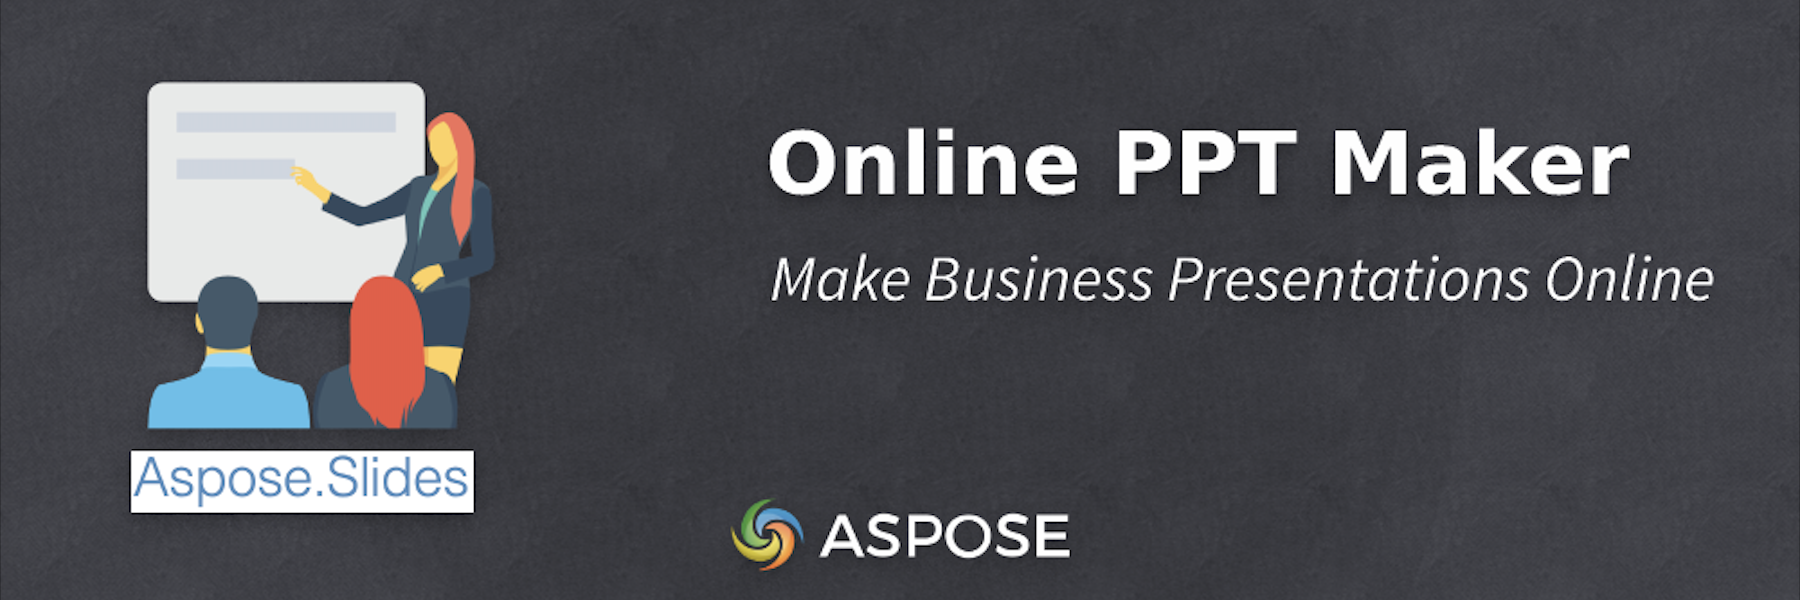 صانع PPT عبر الإنترنت - قم بإنشاء عروض تقديمية للأعمال عبر الإنترنت